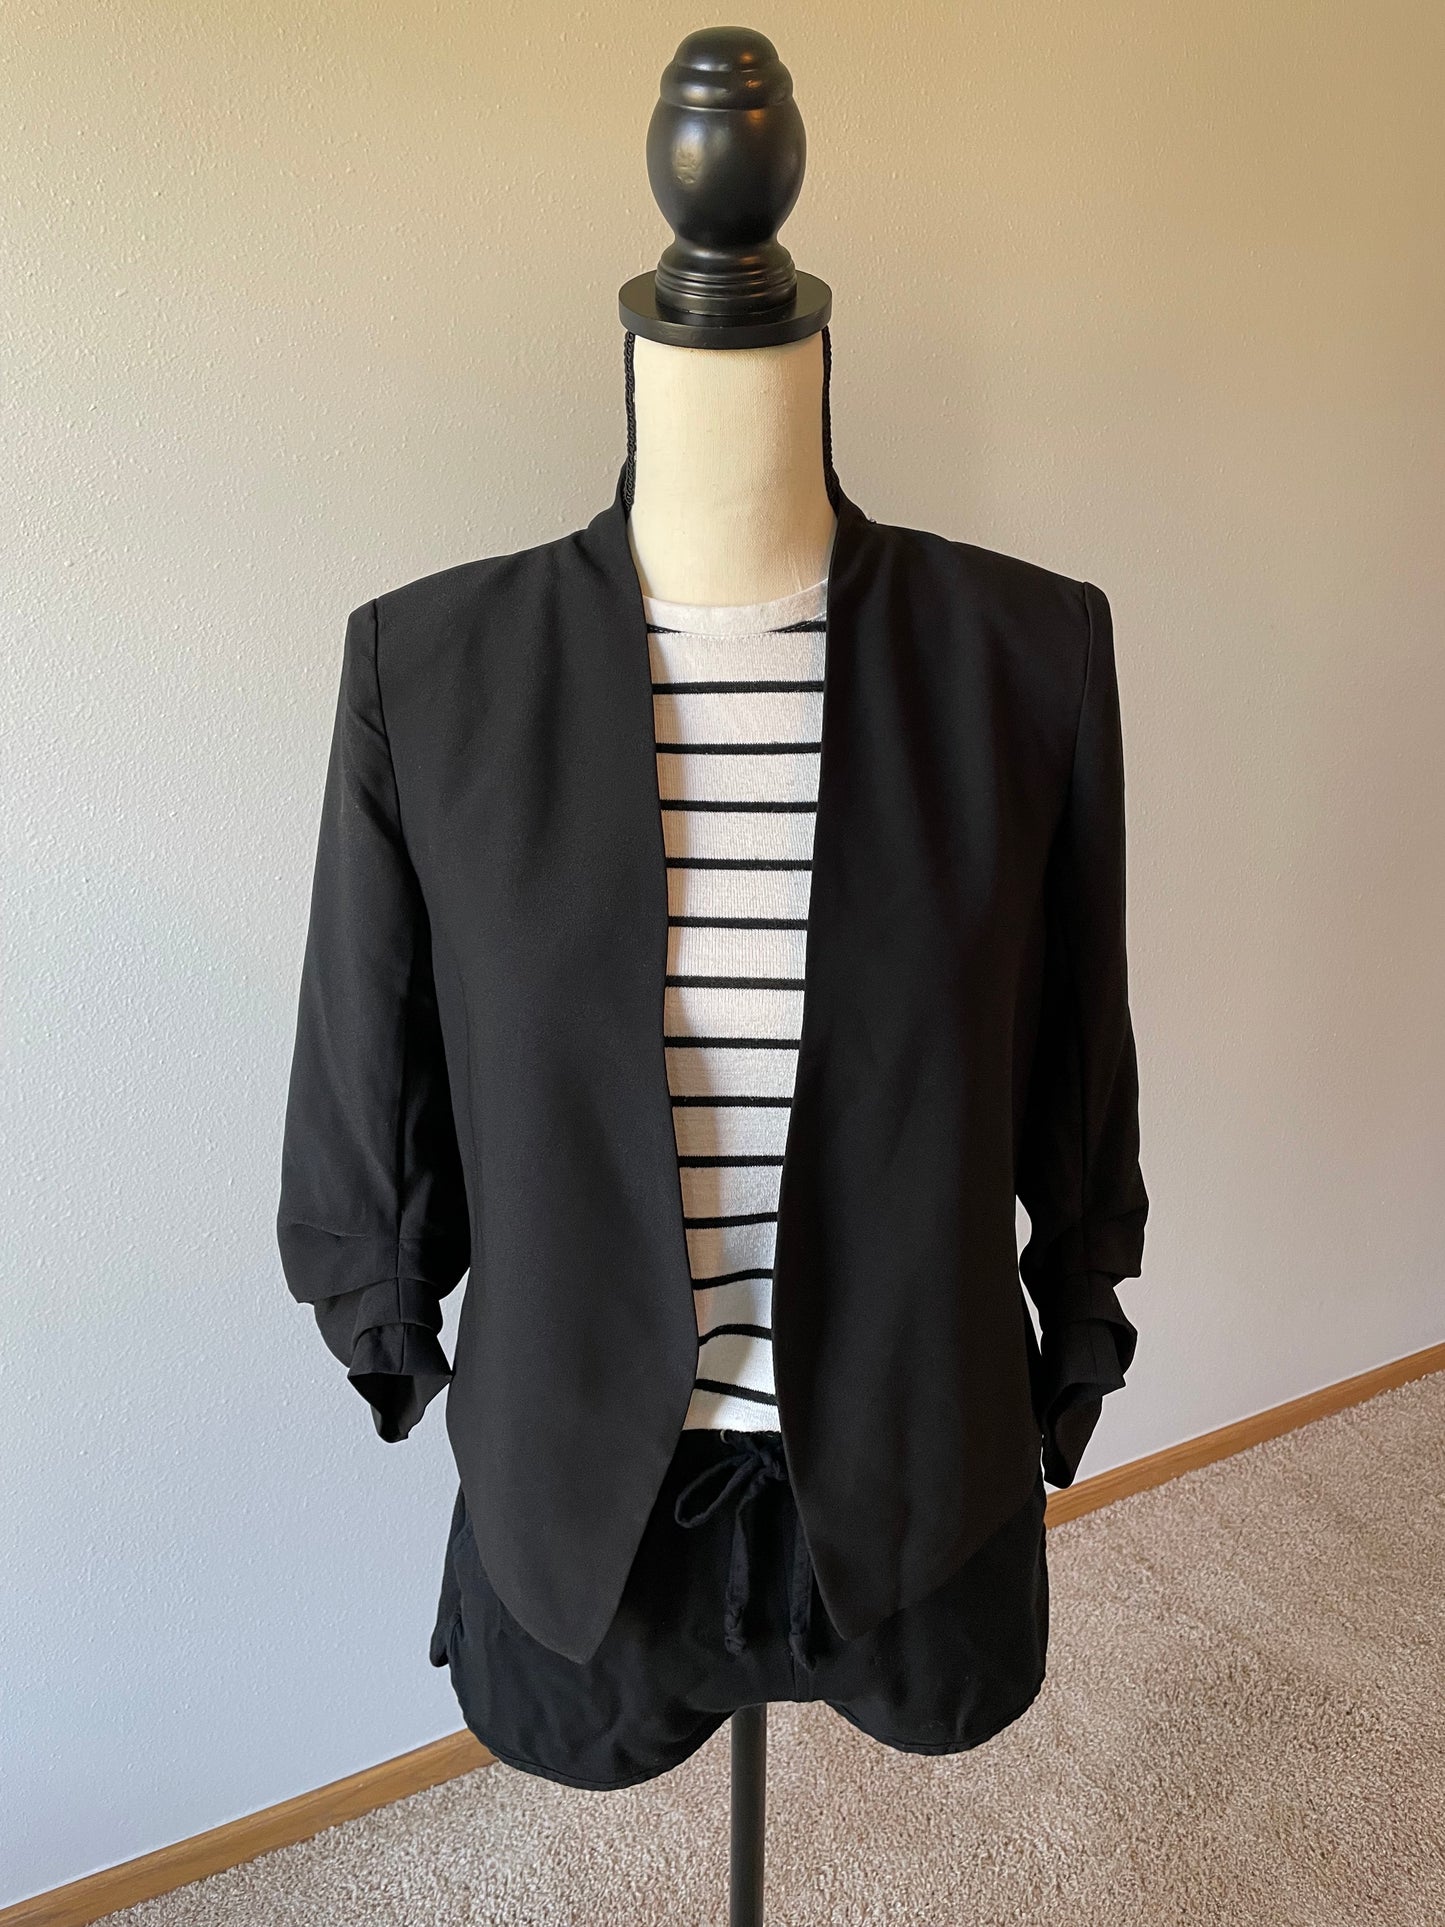 Striped Sleeveless Sweater (XS)